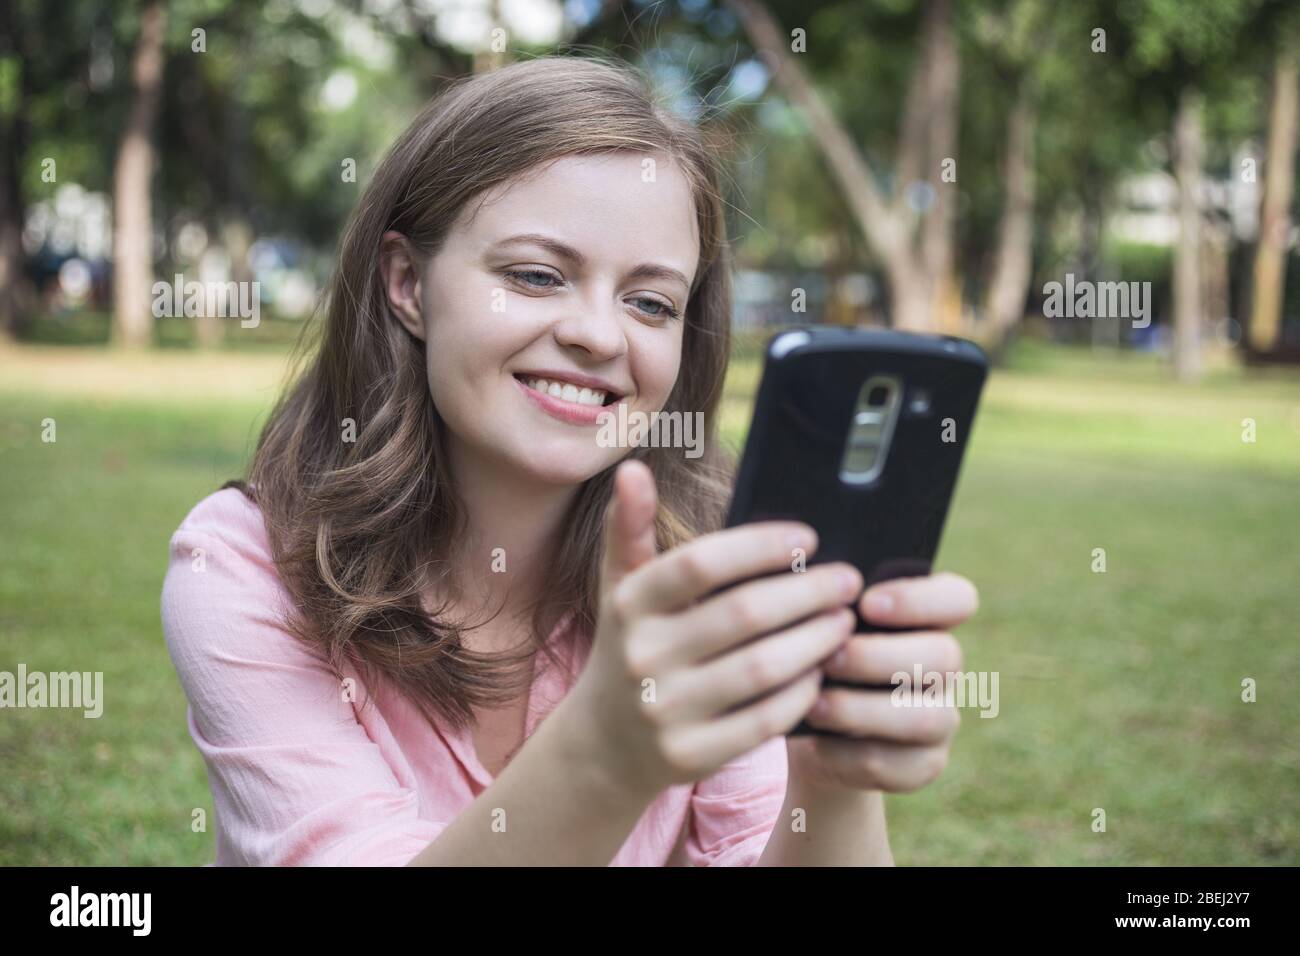 Die junge kaukasische Frau, die lächelnd auf den Bildschirm des Telefons schaut, sieht glücklich aus. Außenbilder. Stockfoto